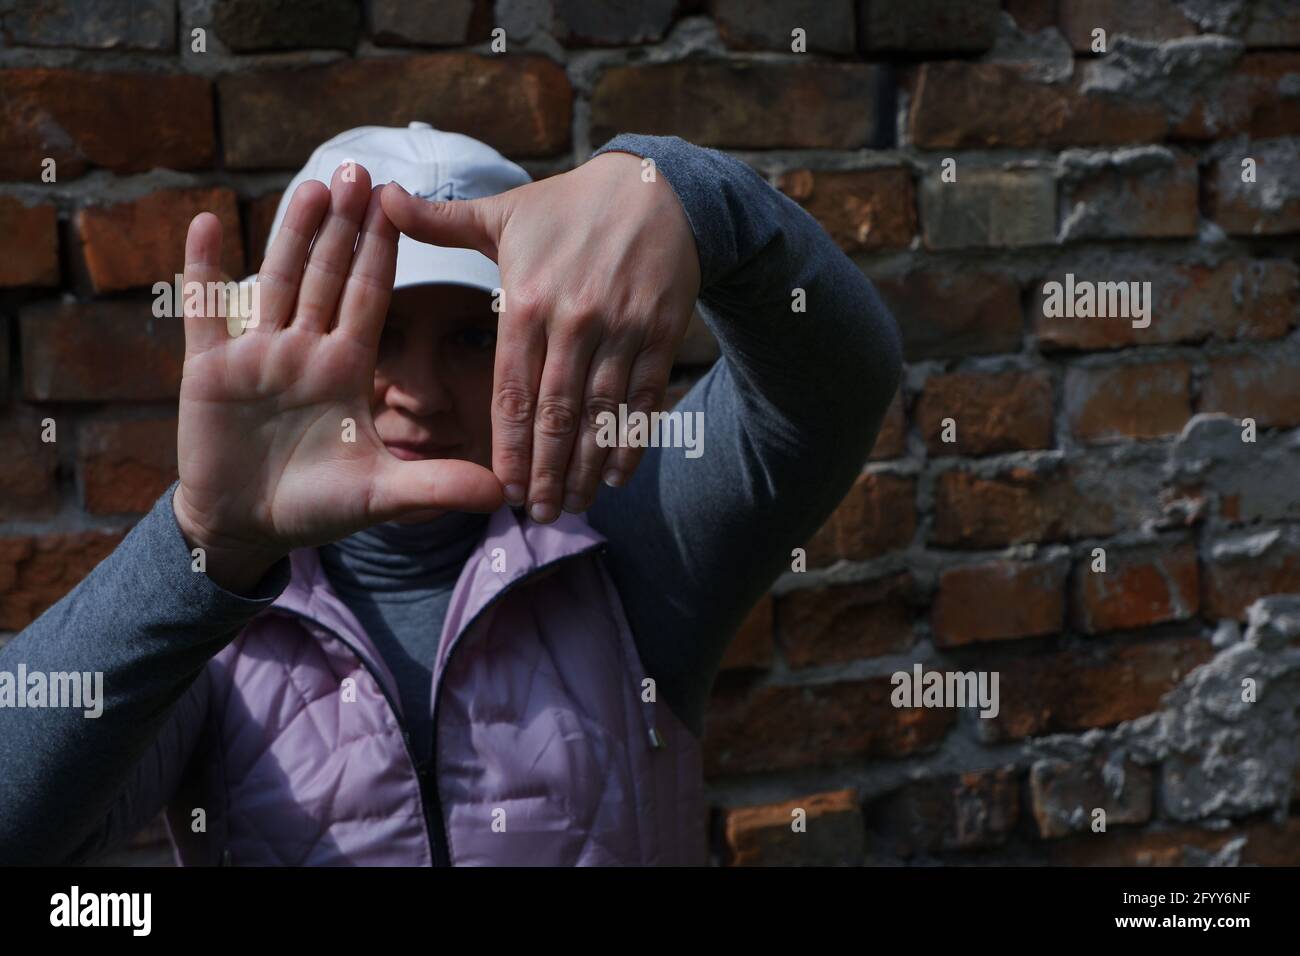 Ein Mädchen in der Nähe einer Mauer mit ihren Händen stellt sich eine Kamera vor. St. Veronica's Day Photographer's Day . Stockfoto